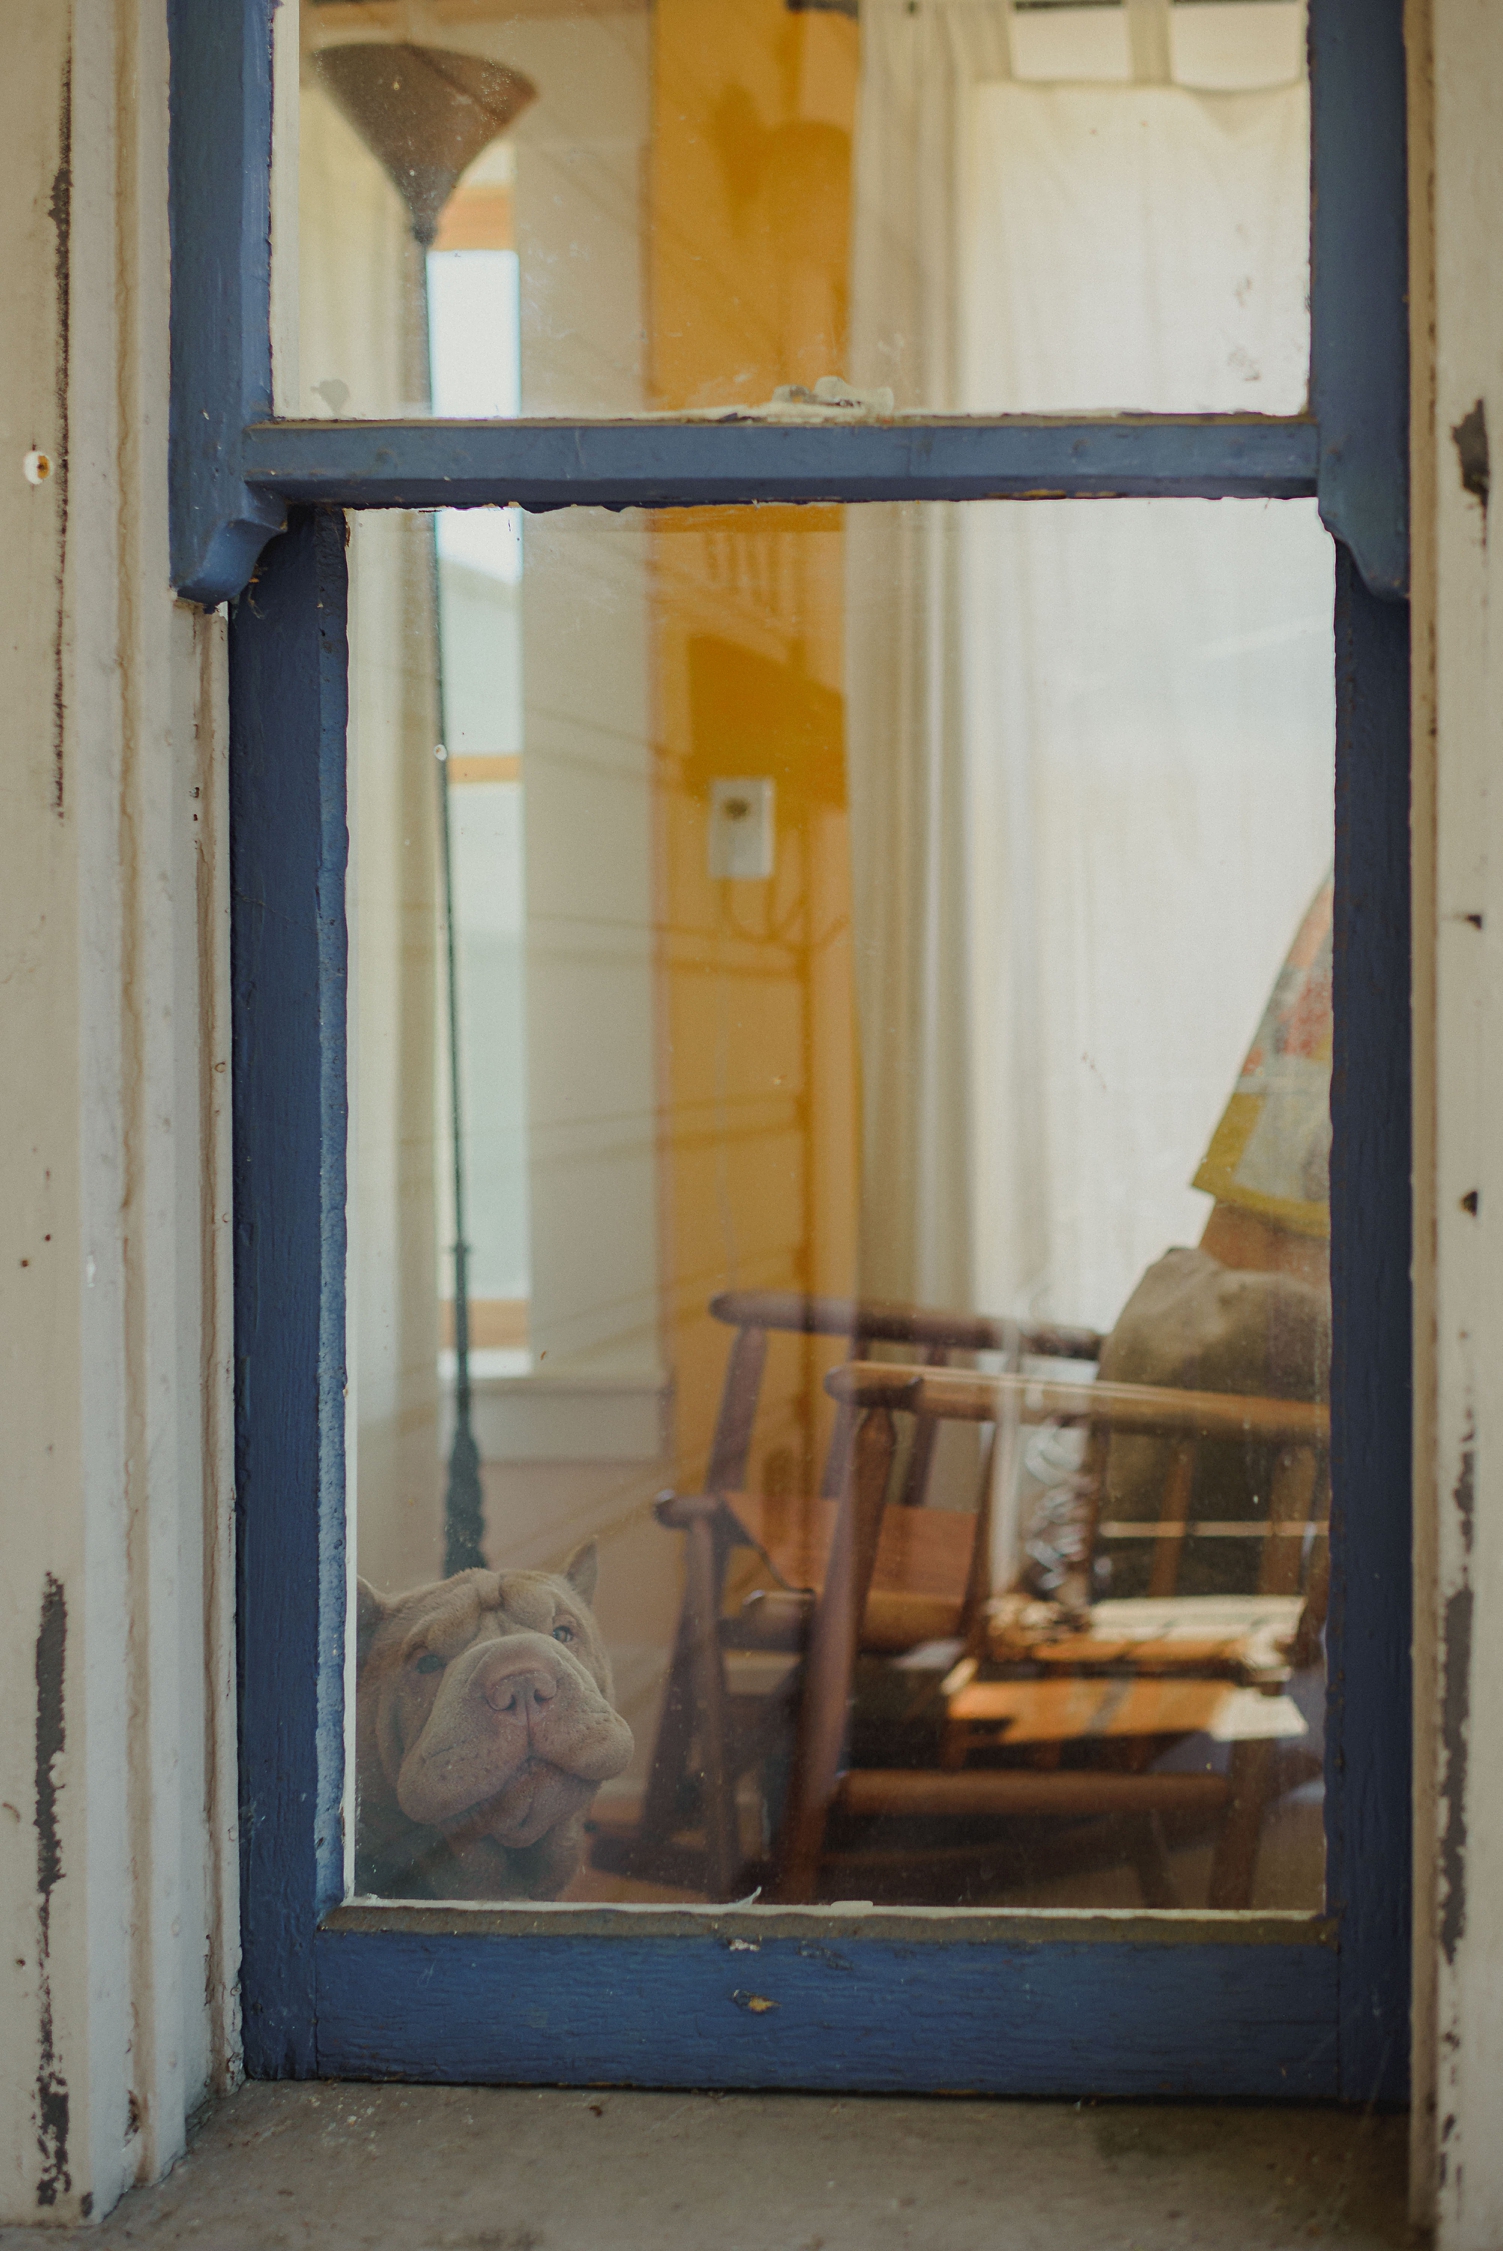 portland oregon dog in window